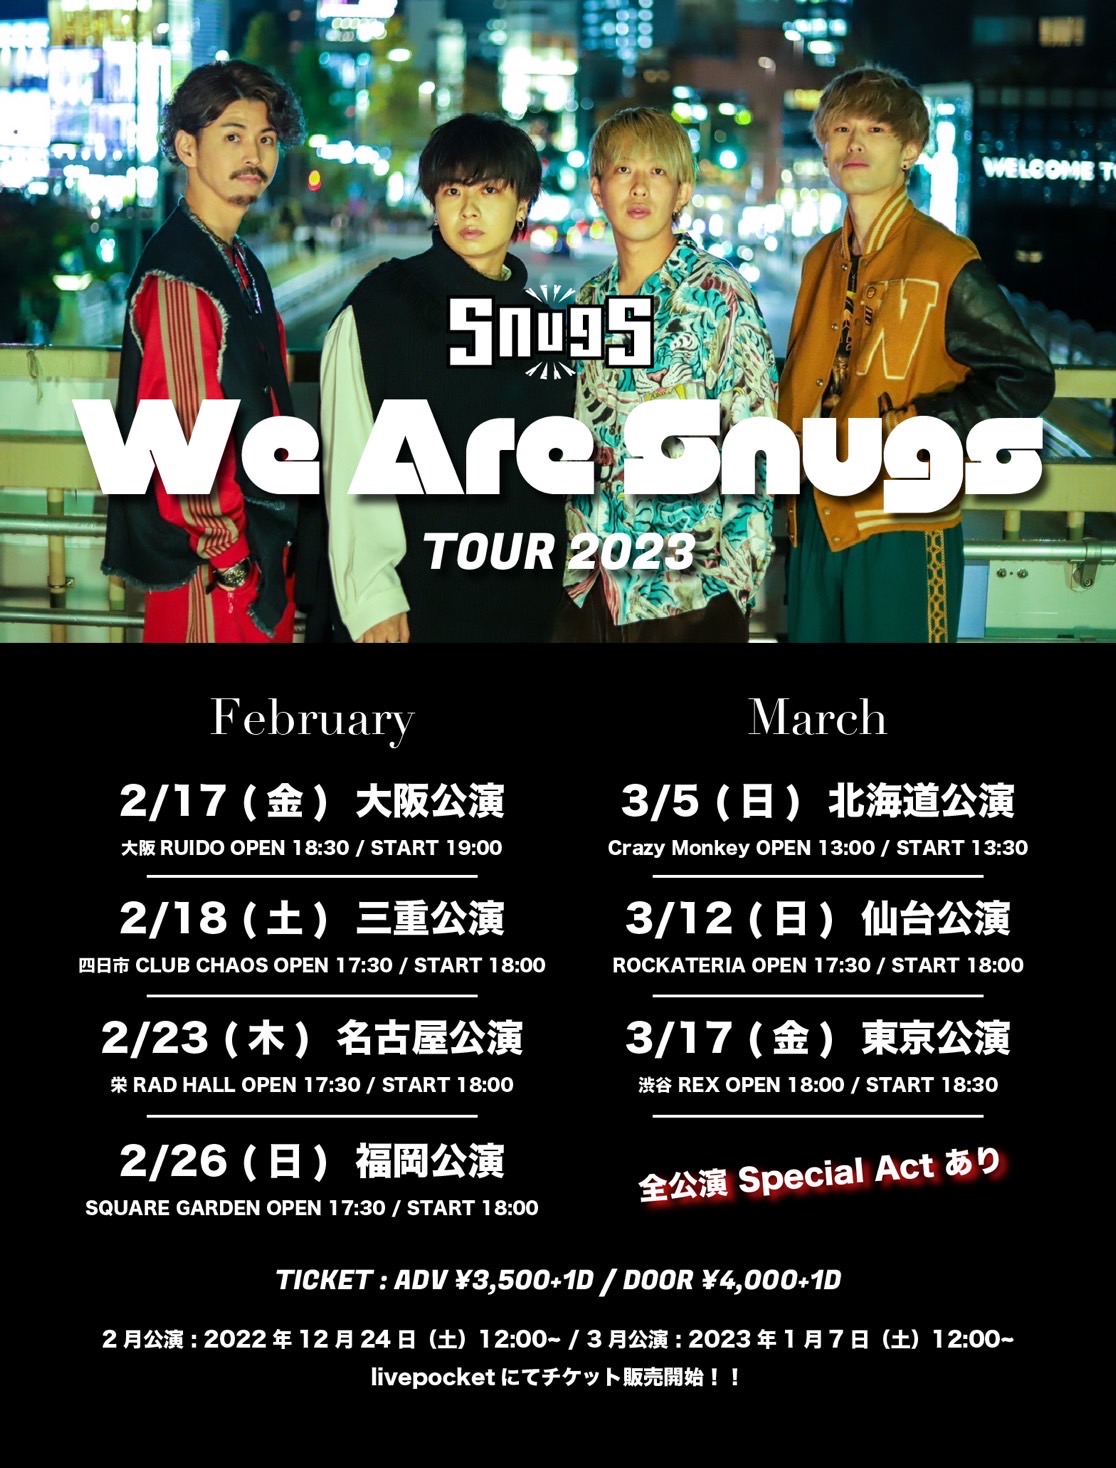 Snugs 『We Are Snugs TOUR 2023』　仙台公演